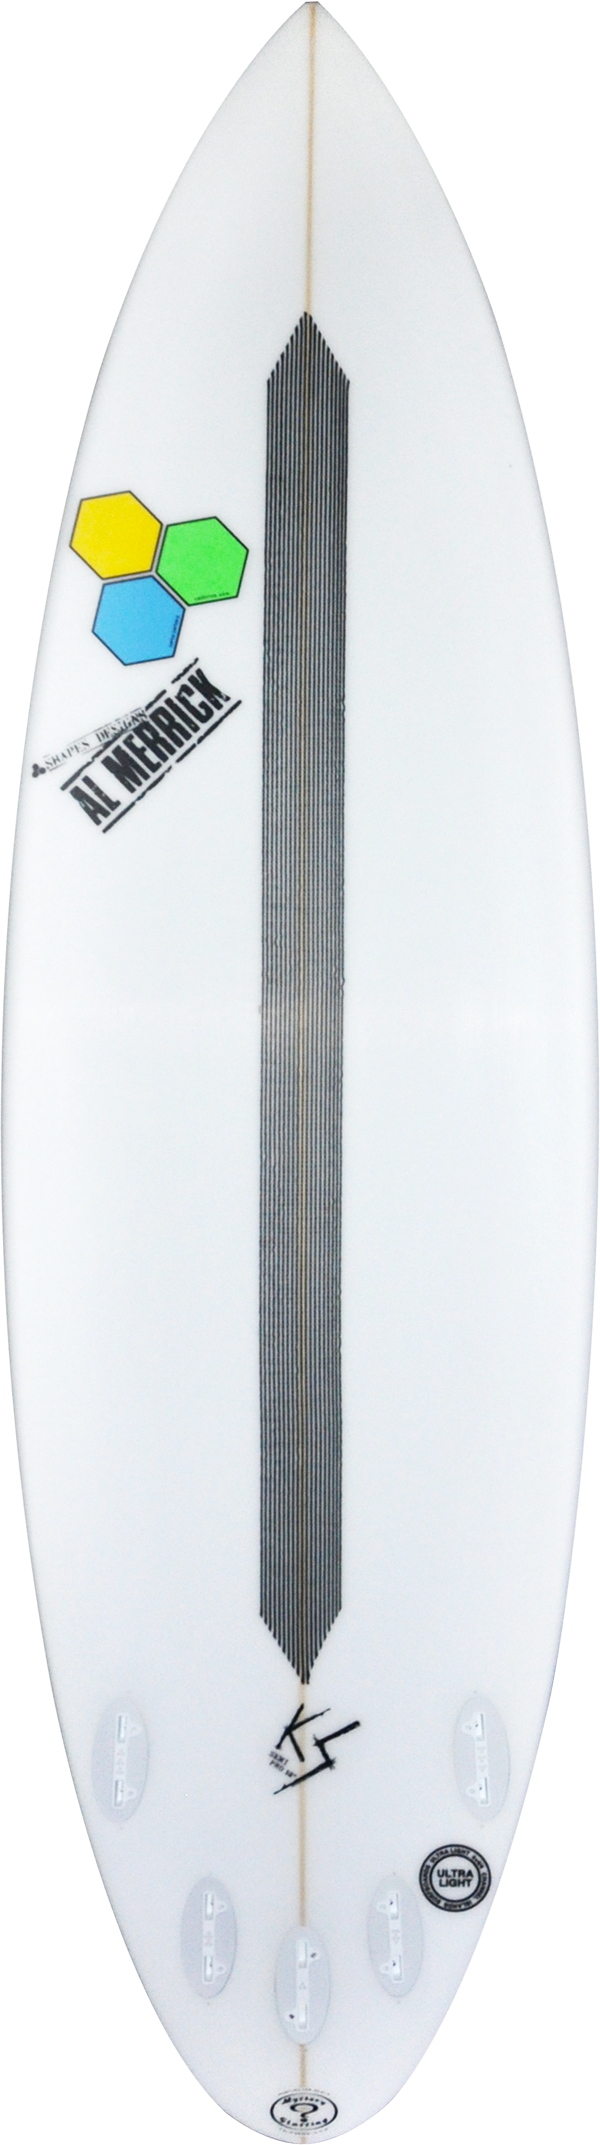 Semi Pro 12 – Channel Islands Surfboards